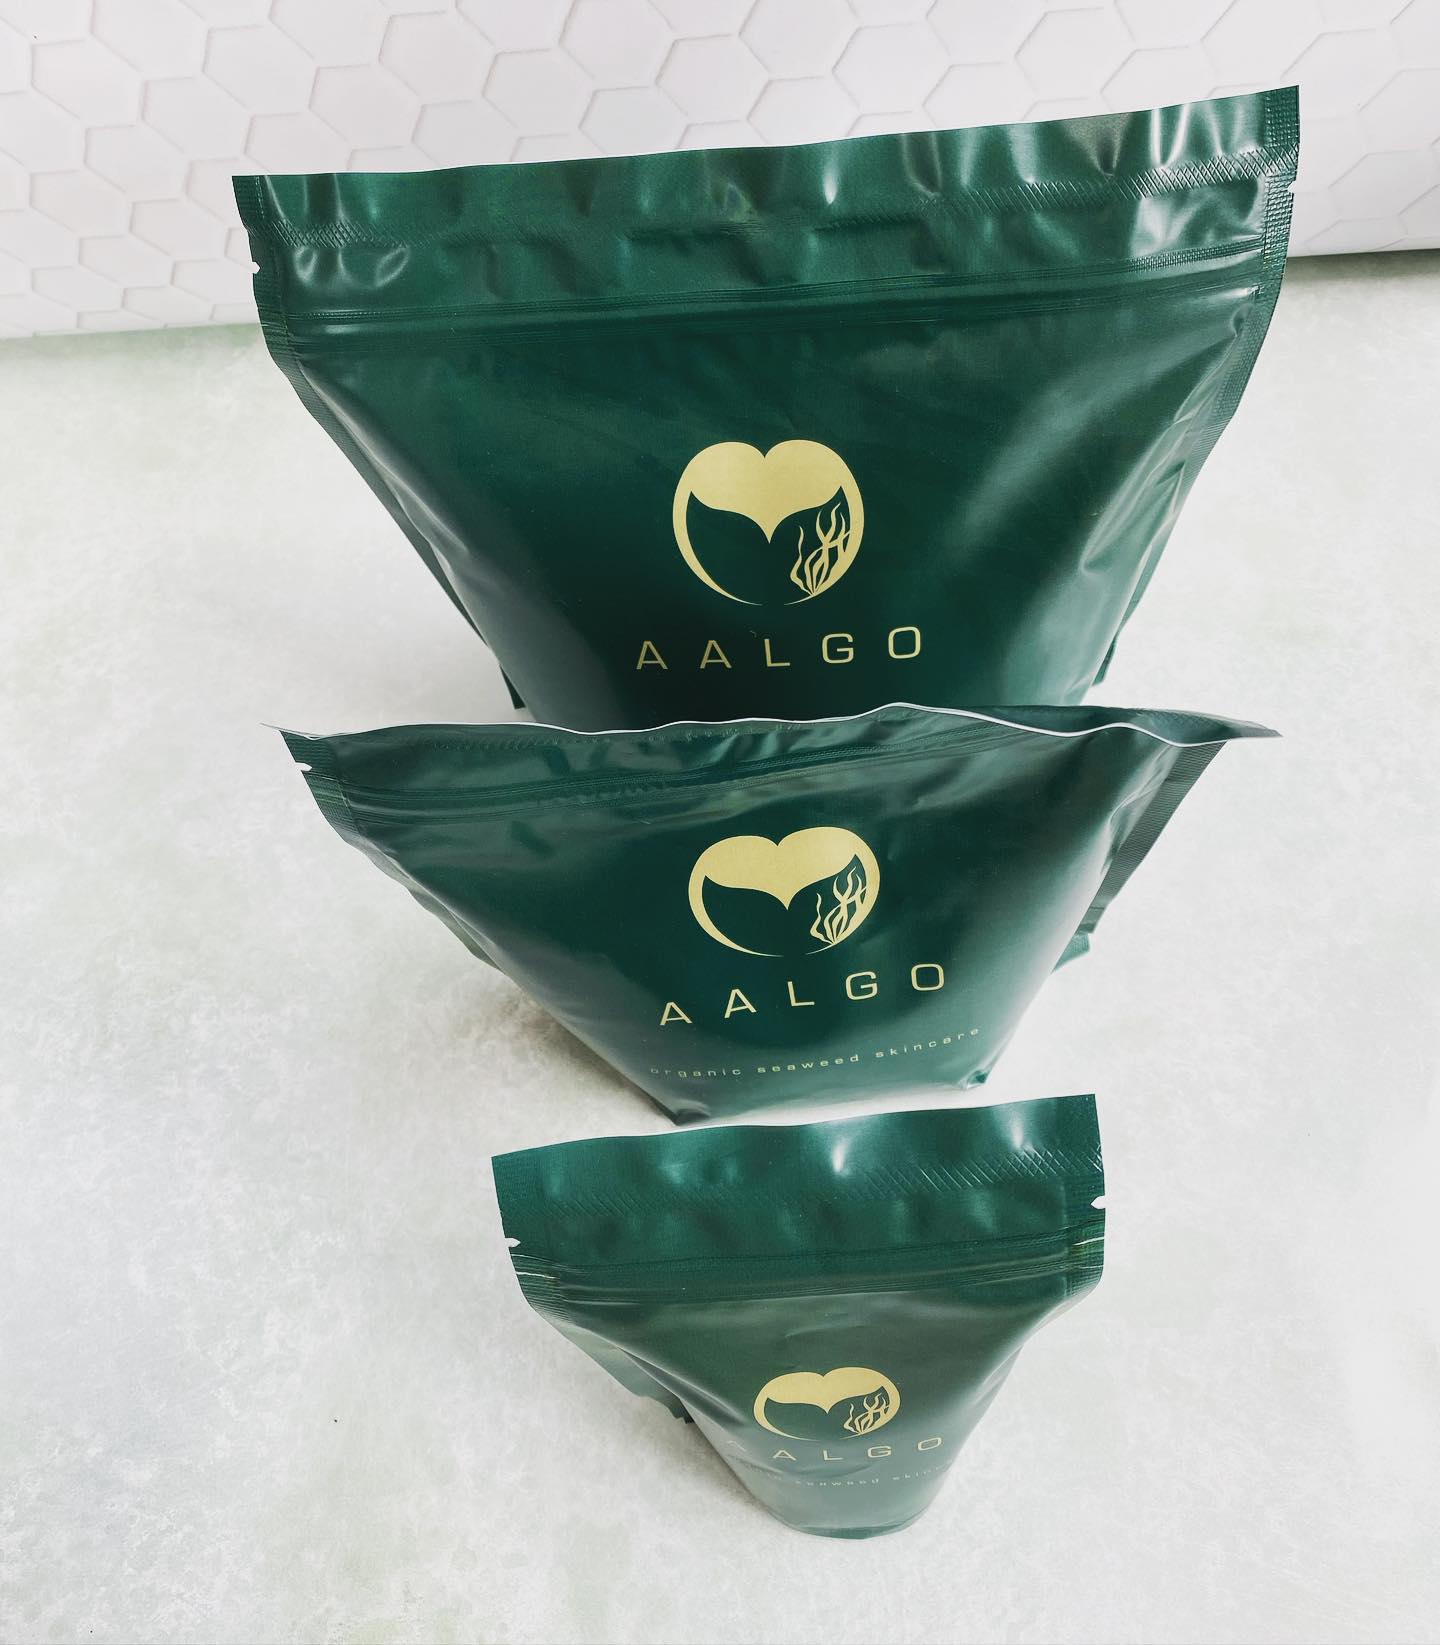 AALGO - Organic Seaweed  150g